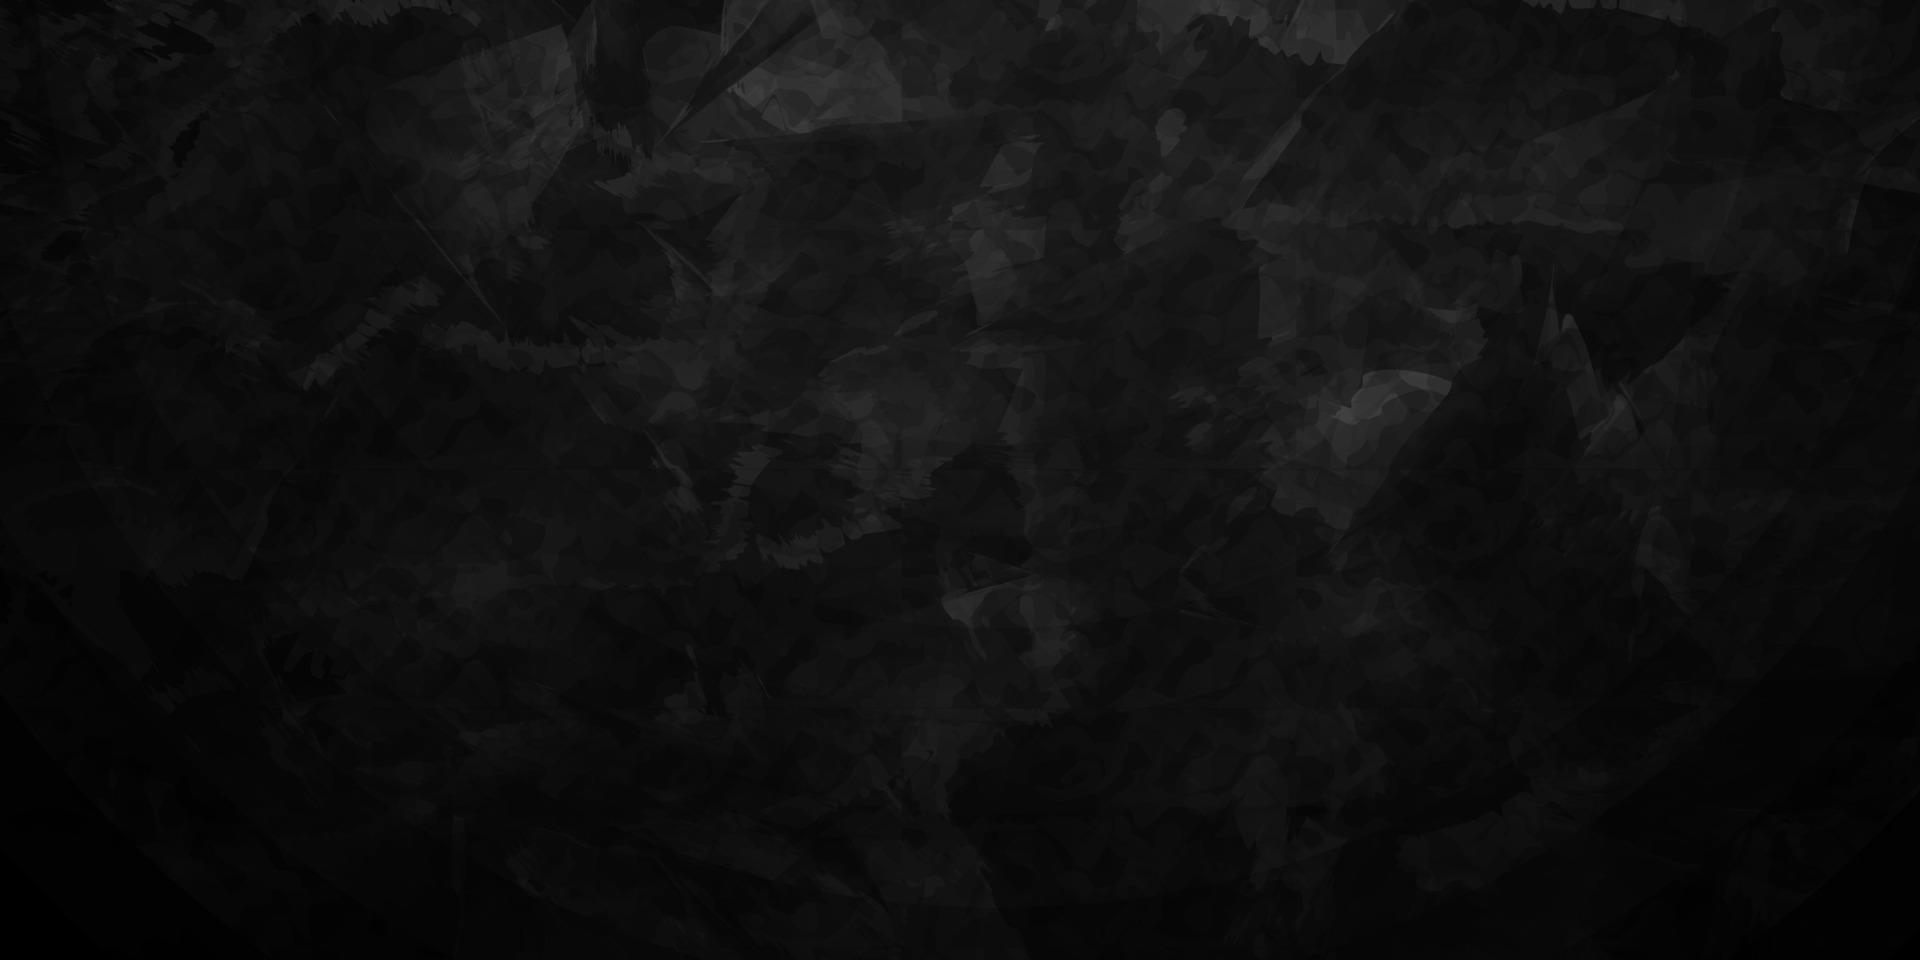 banner de venda, cartaz, design de folheto com padrão em tela preta escura e fundo de textura grunge. modelo de pano de fundo de design moderno para anúncios publicitários, sociais e de moda vetor